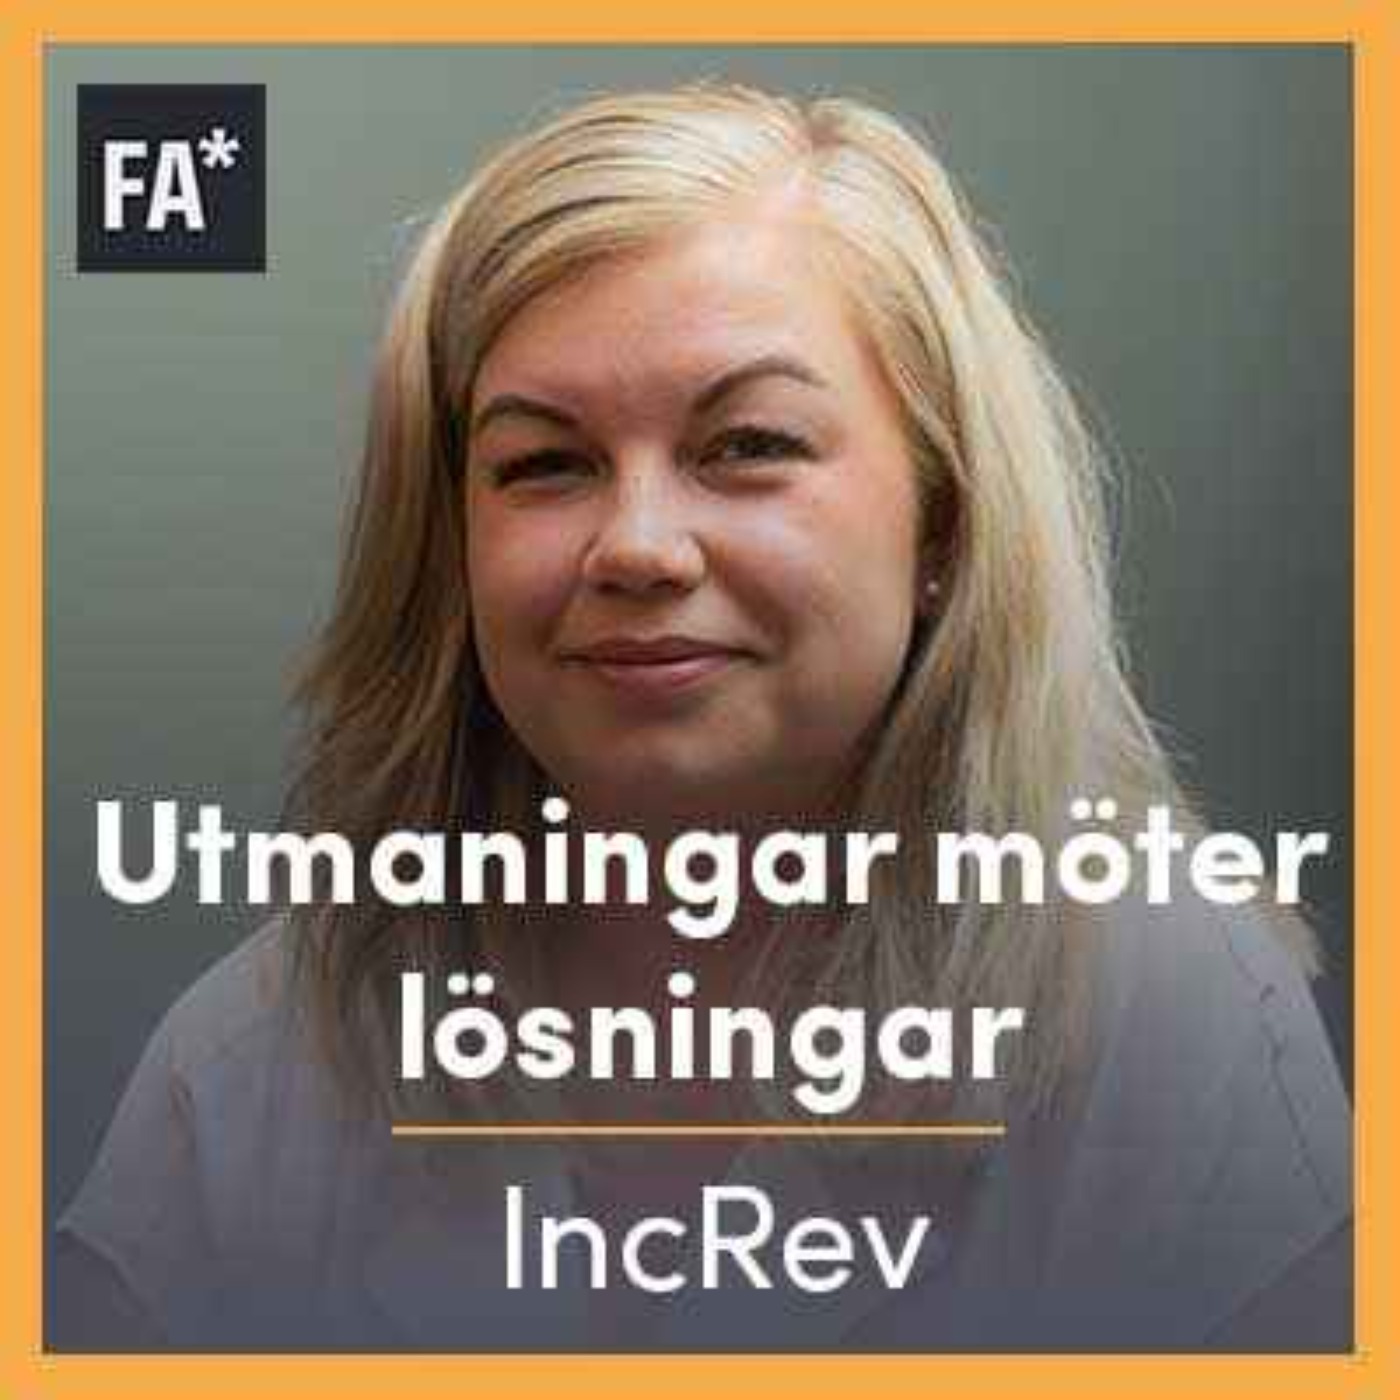 IncRev's grundare - Sandra-Stina Vesterlund